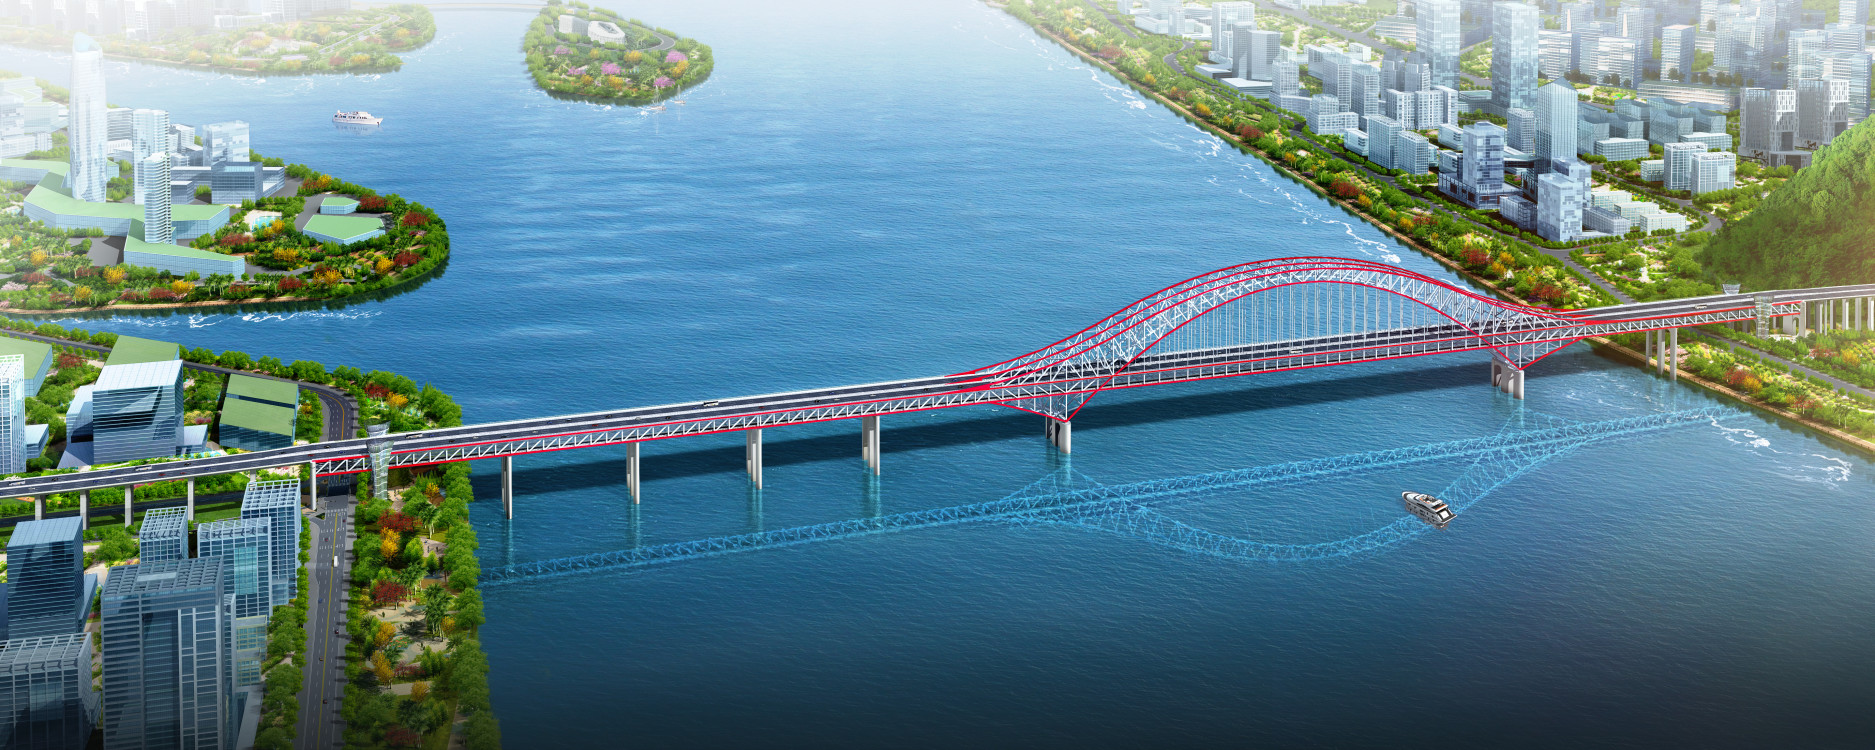 明珠湾大桥3.jpg